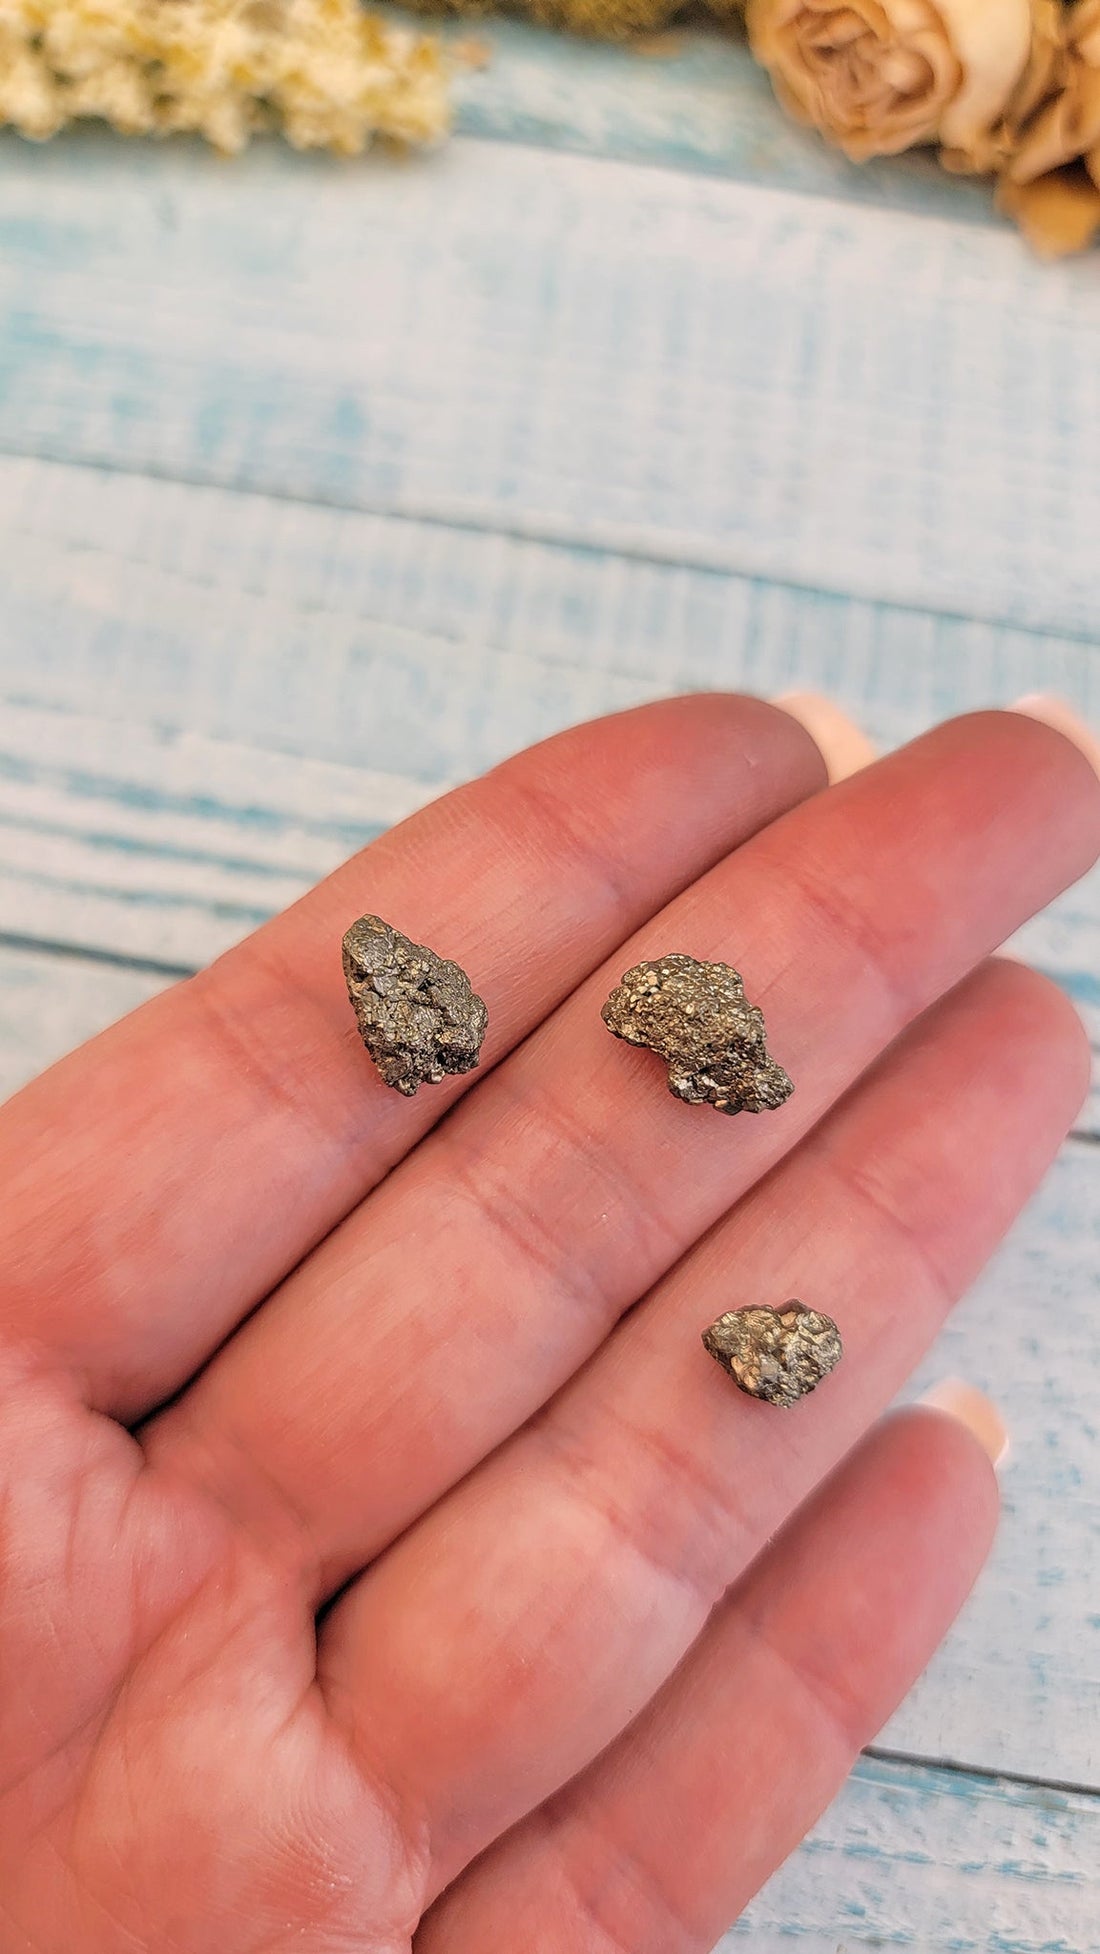 WHOLESALE BULK LOT - Pyrite Fool's Gold - Rough Gemstone - 30 Pieces